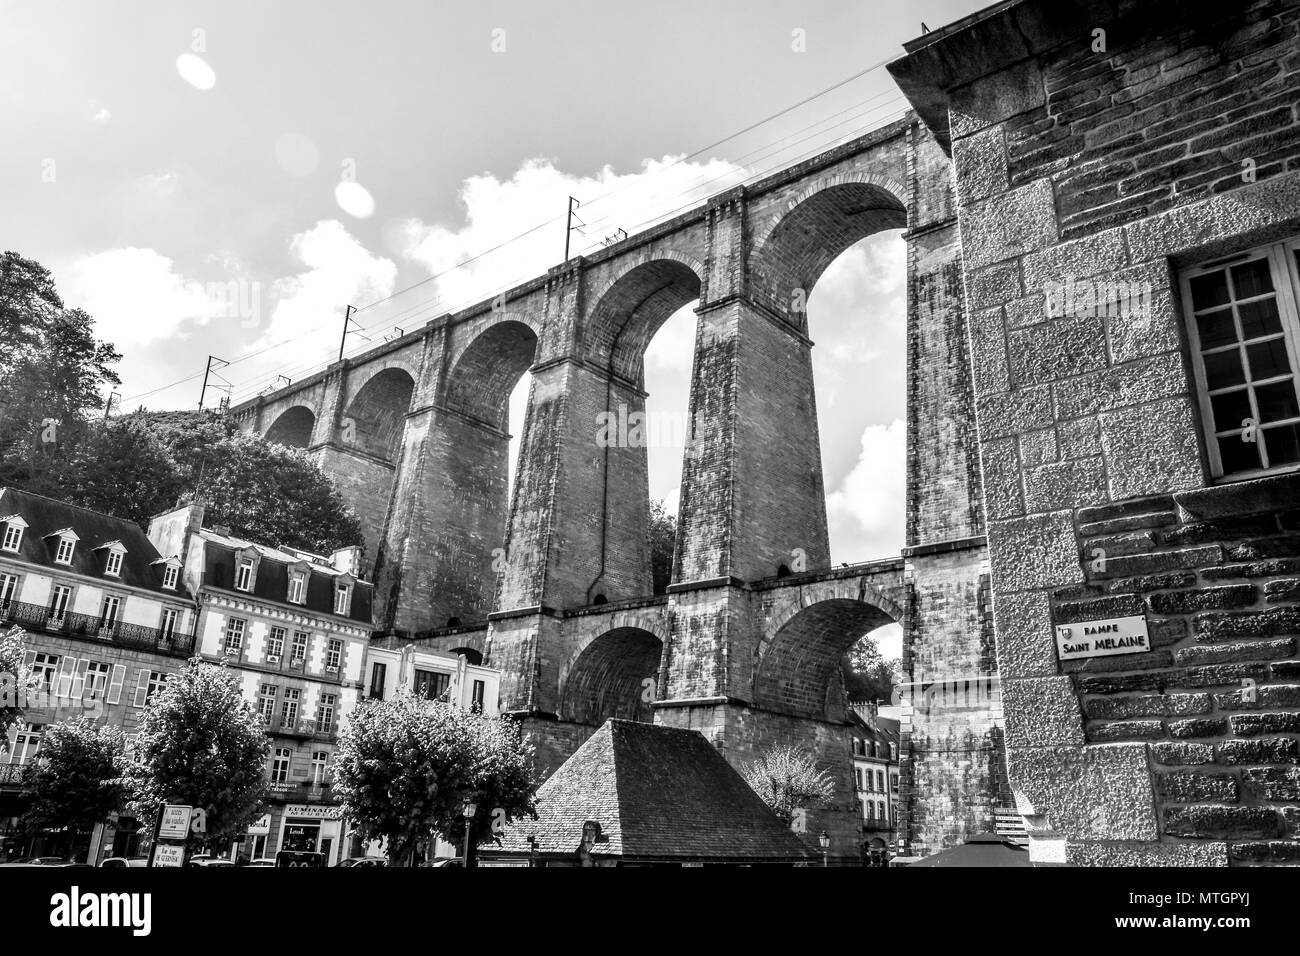 Schichten von Bau aus Stein in der Häuser, Kirchen, und ein Viadukt in Morlaix, Bretagne, Frankreich. Stockfoto